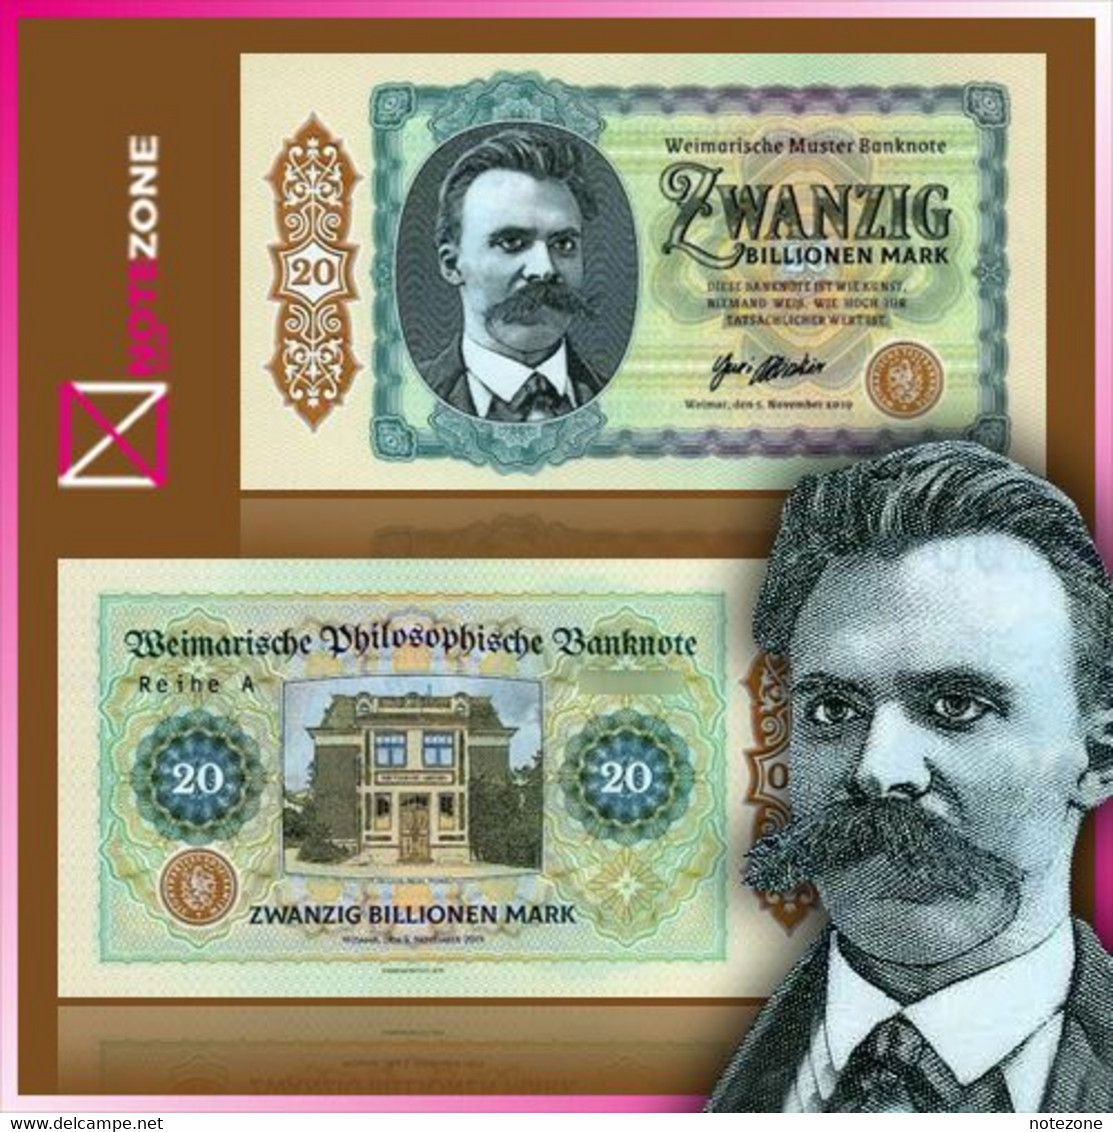 Matej Gabris 20 Billion Mark Polymer Test Germany Private Note Fantasy Banknote - Sammlungen